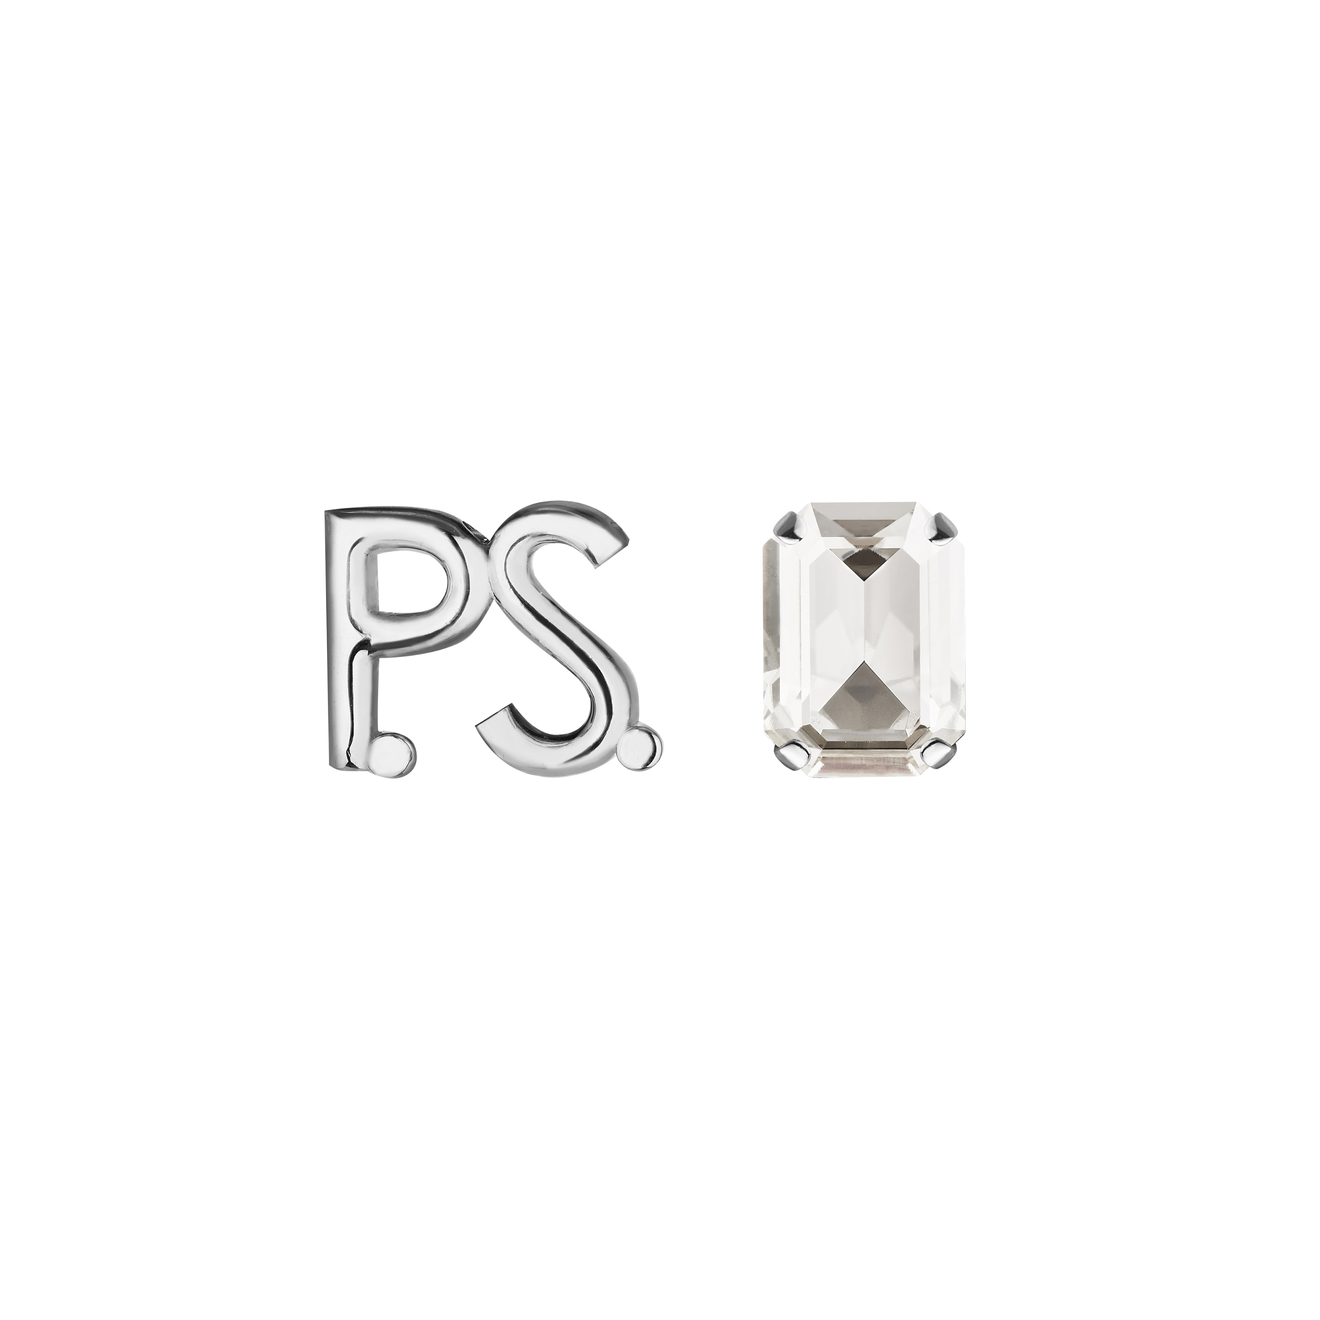 Phenomenal Studio Серьги с фирменным логотипом и крупным кристаллом P.S. Crystal Rhodium phenomenal studio серебристые серьги с кристаллами и металлическими бусинами crystal disco